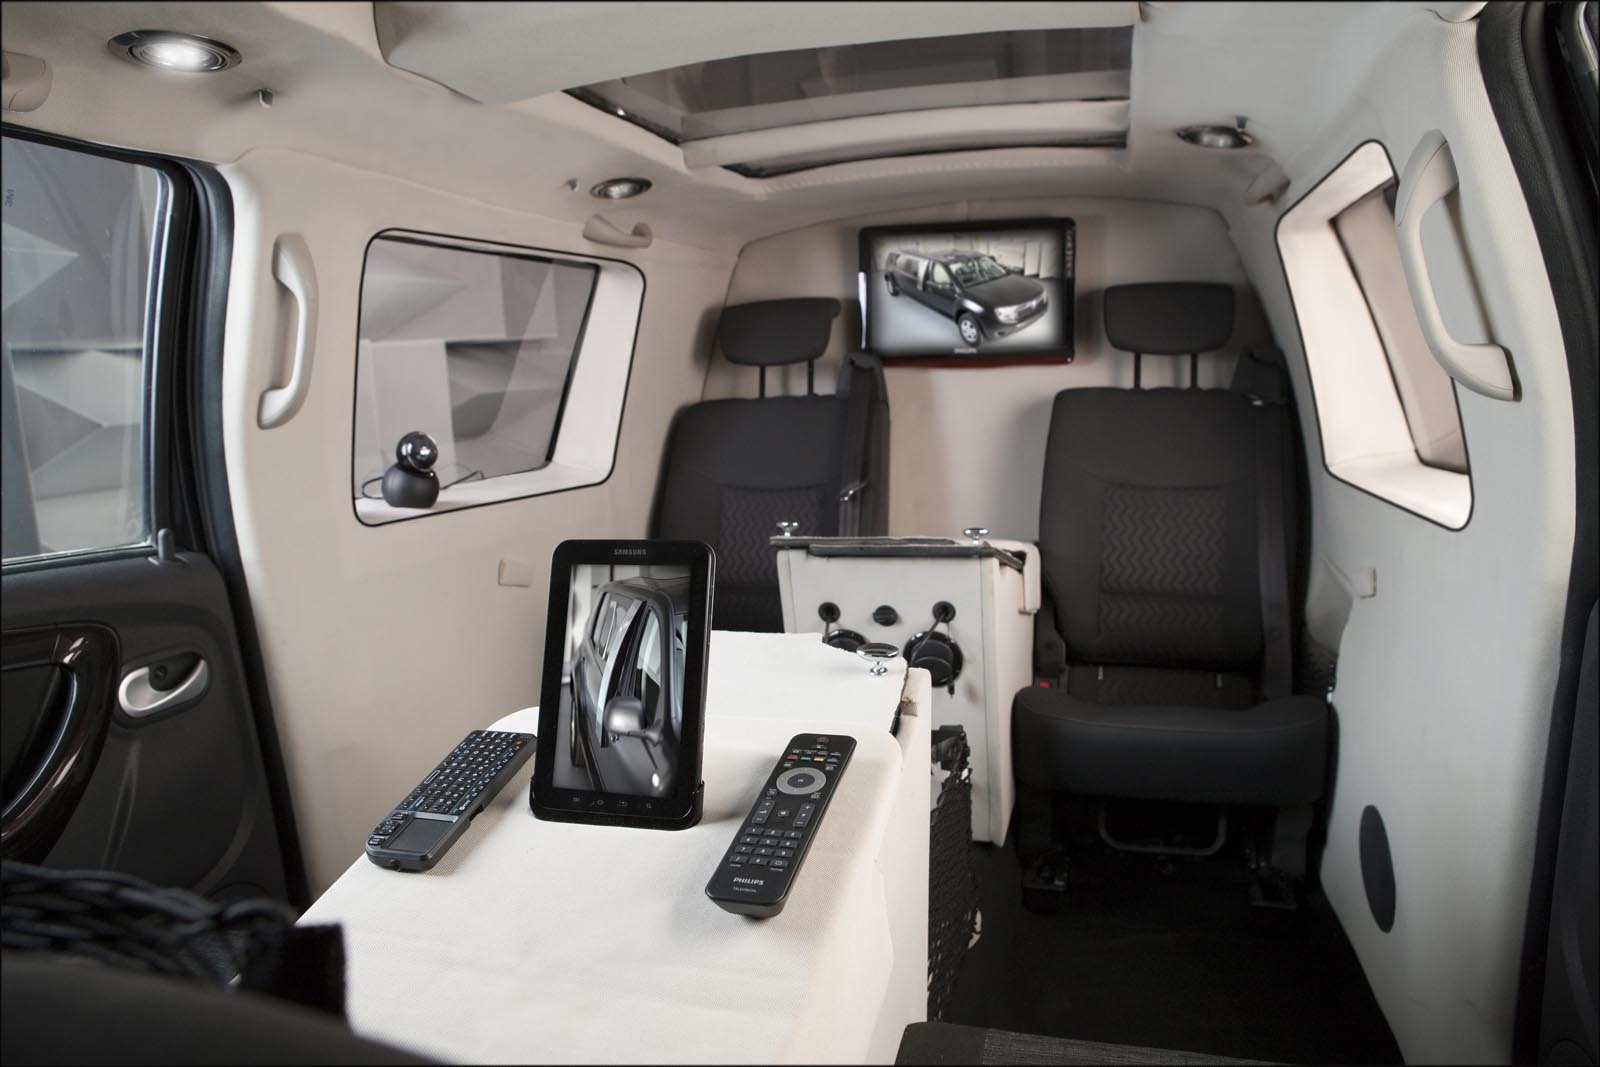 Interiorul lui Duster Birou Mobil este plin de gadgeturi electronice, pentru videoconferinta